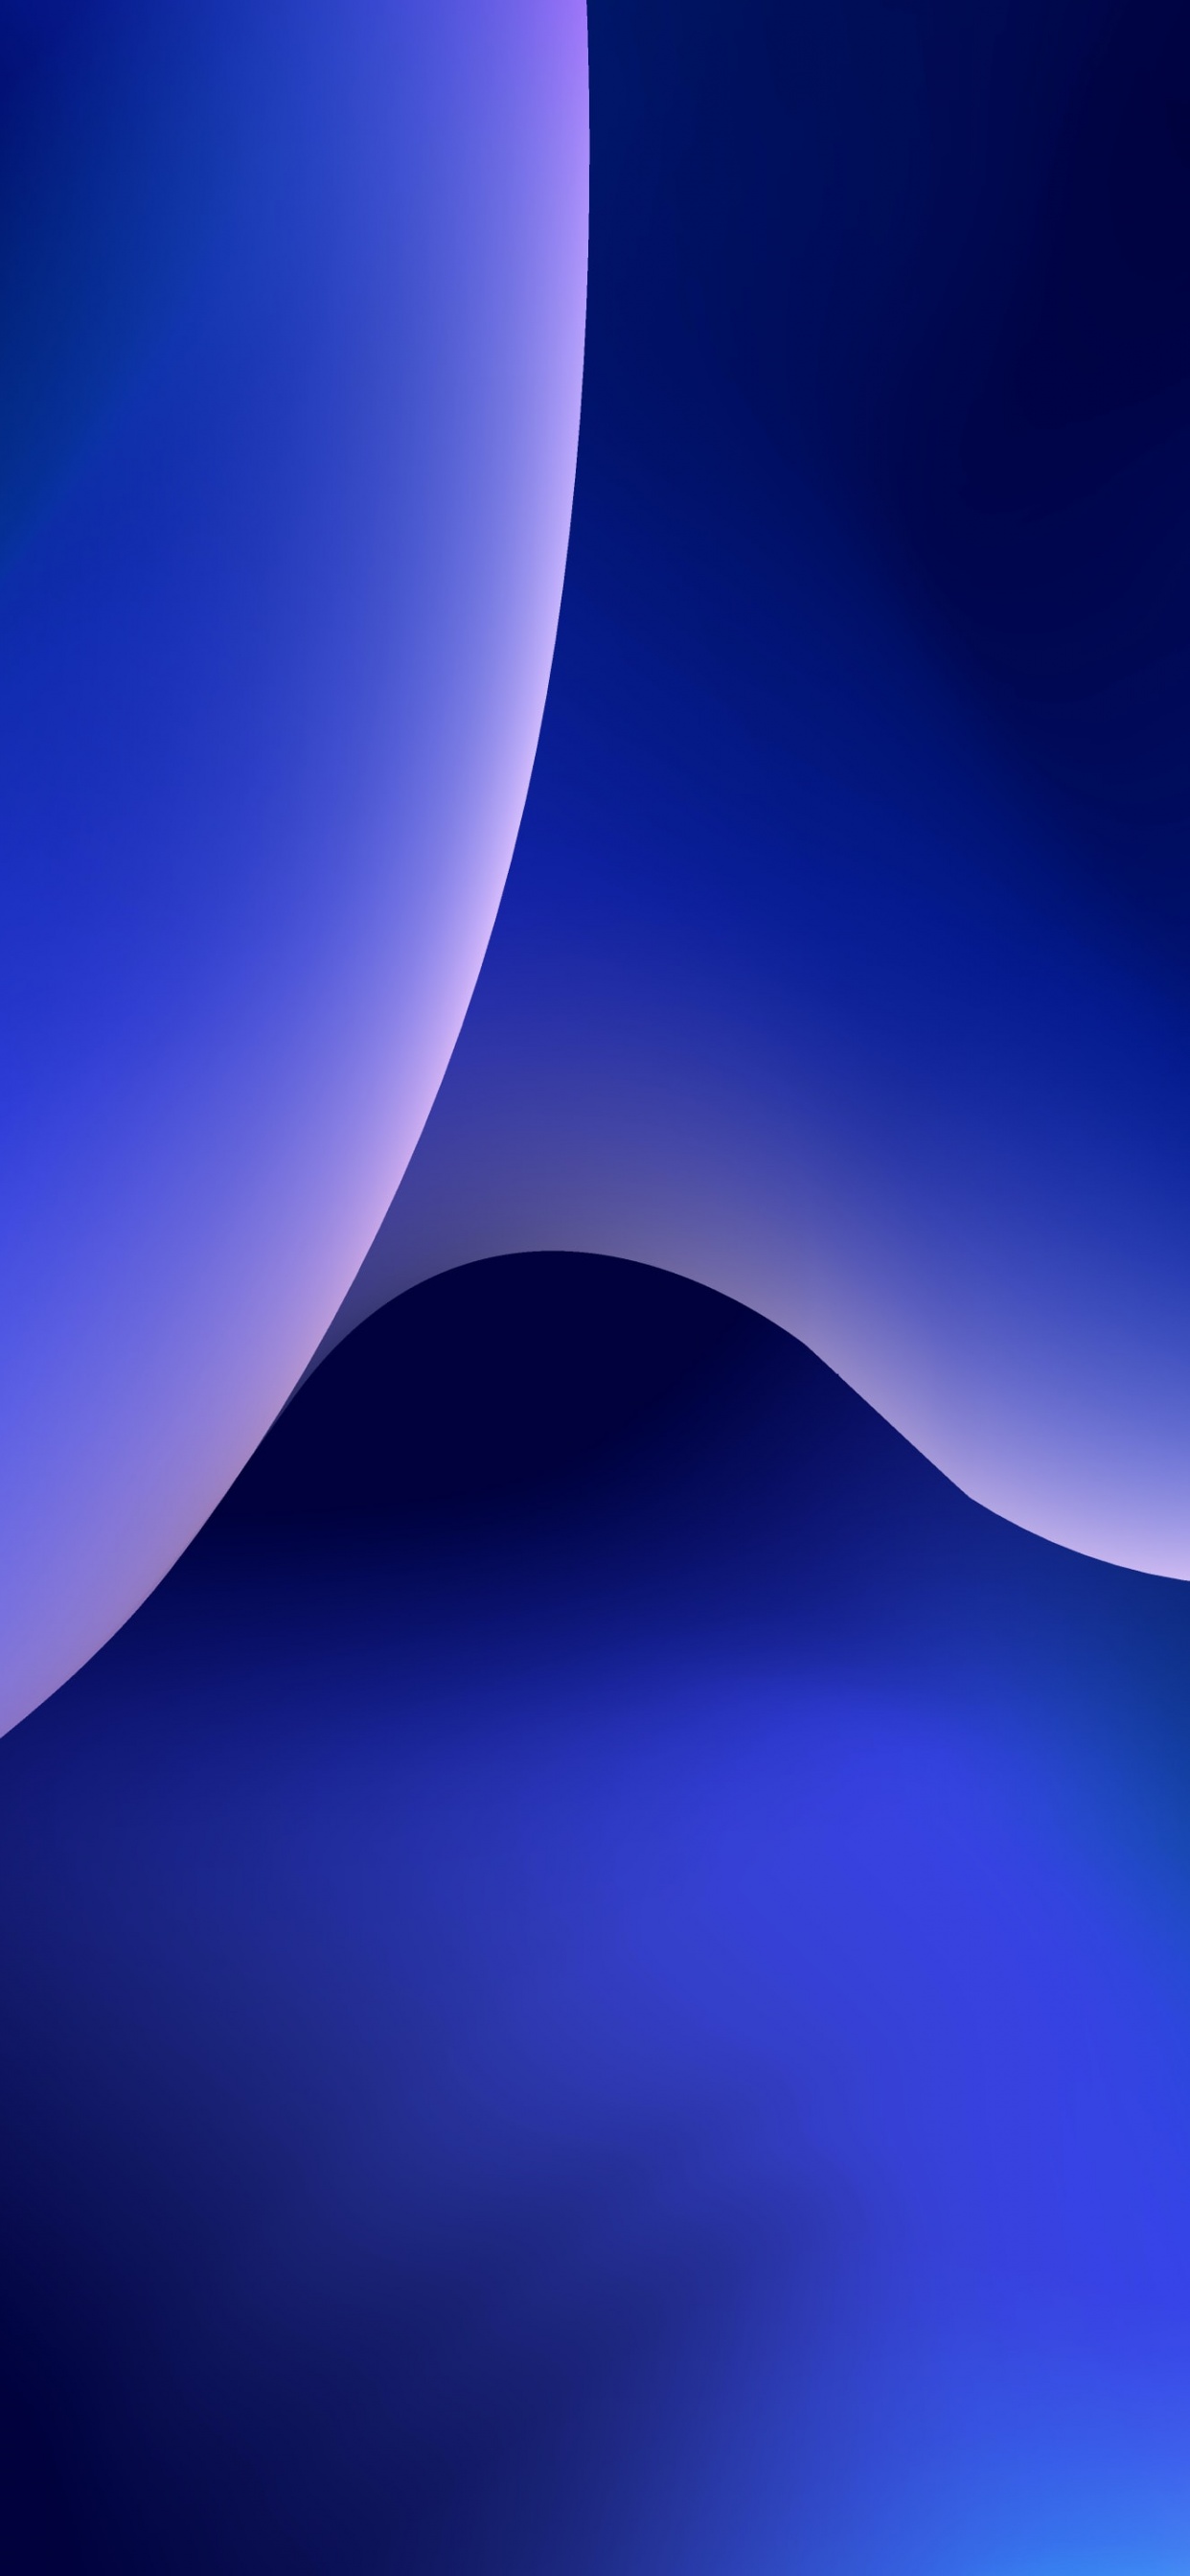 Hình nền iOS 4K với một cảnh quan tuyệt đẹp nền xanh trên nền trừu tượng phong cách sáng tạo, với chất lượng hình ảnh sắc nét và sống động, sẽ đem lại cho bạn một trải nghiệm nhìn ảnh thỏa mãn và đáng nhớ nhất. Hãy để tâm trí được thư giãn và giải trí với một không gian sáng tạo đầy màu sắc #6784.